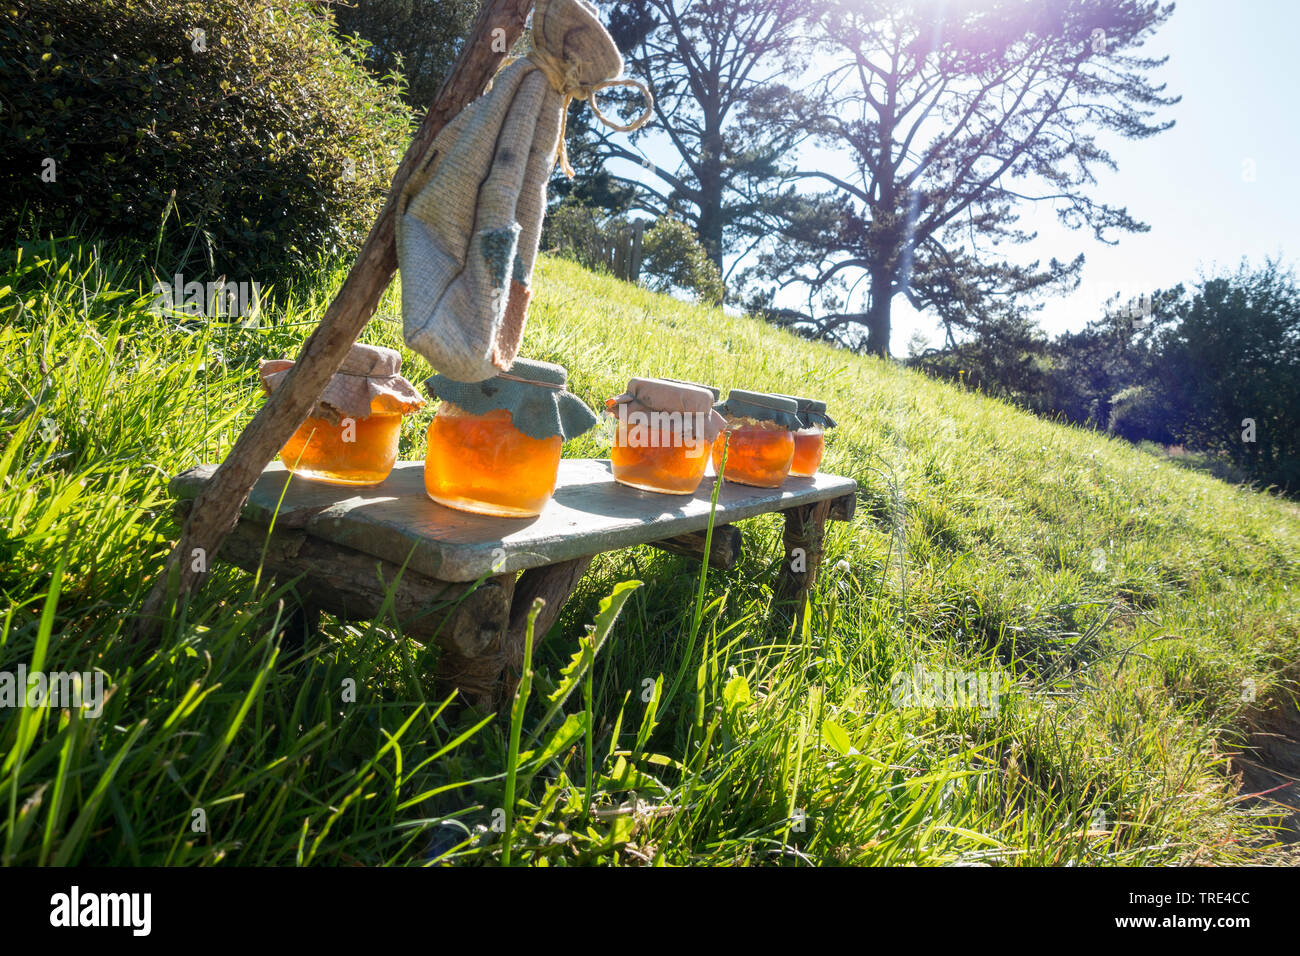 Preservare il vaso riempito con miele messo su pascoli nell'ombra di un albero, Europa Foto Stock